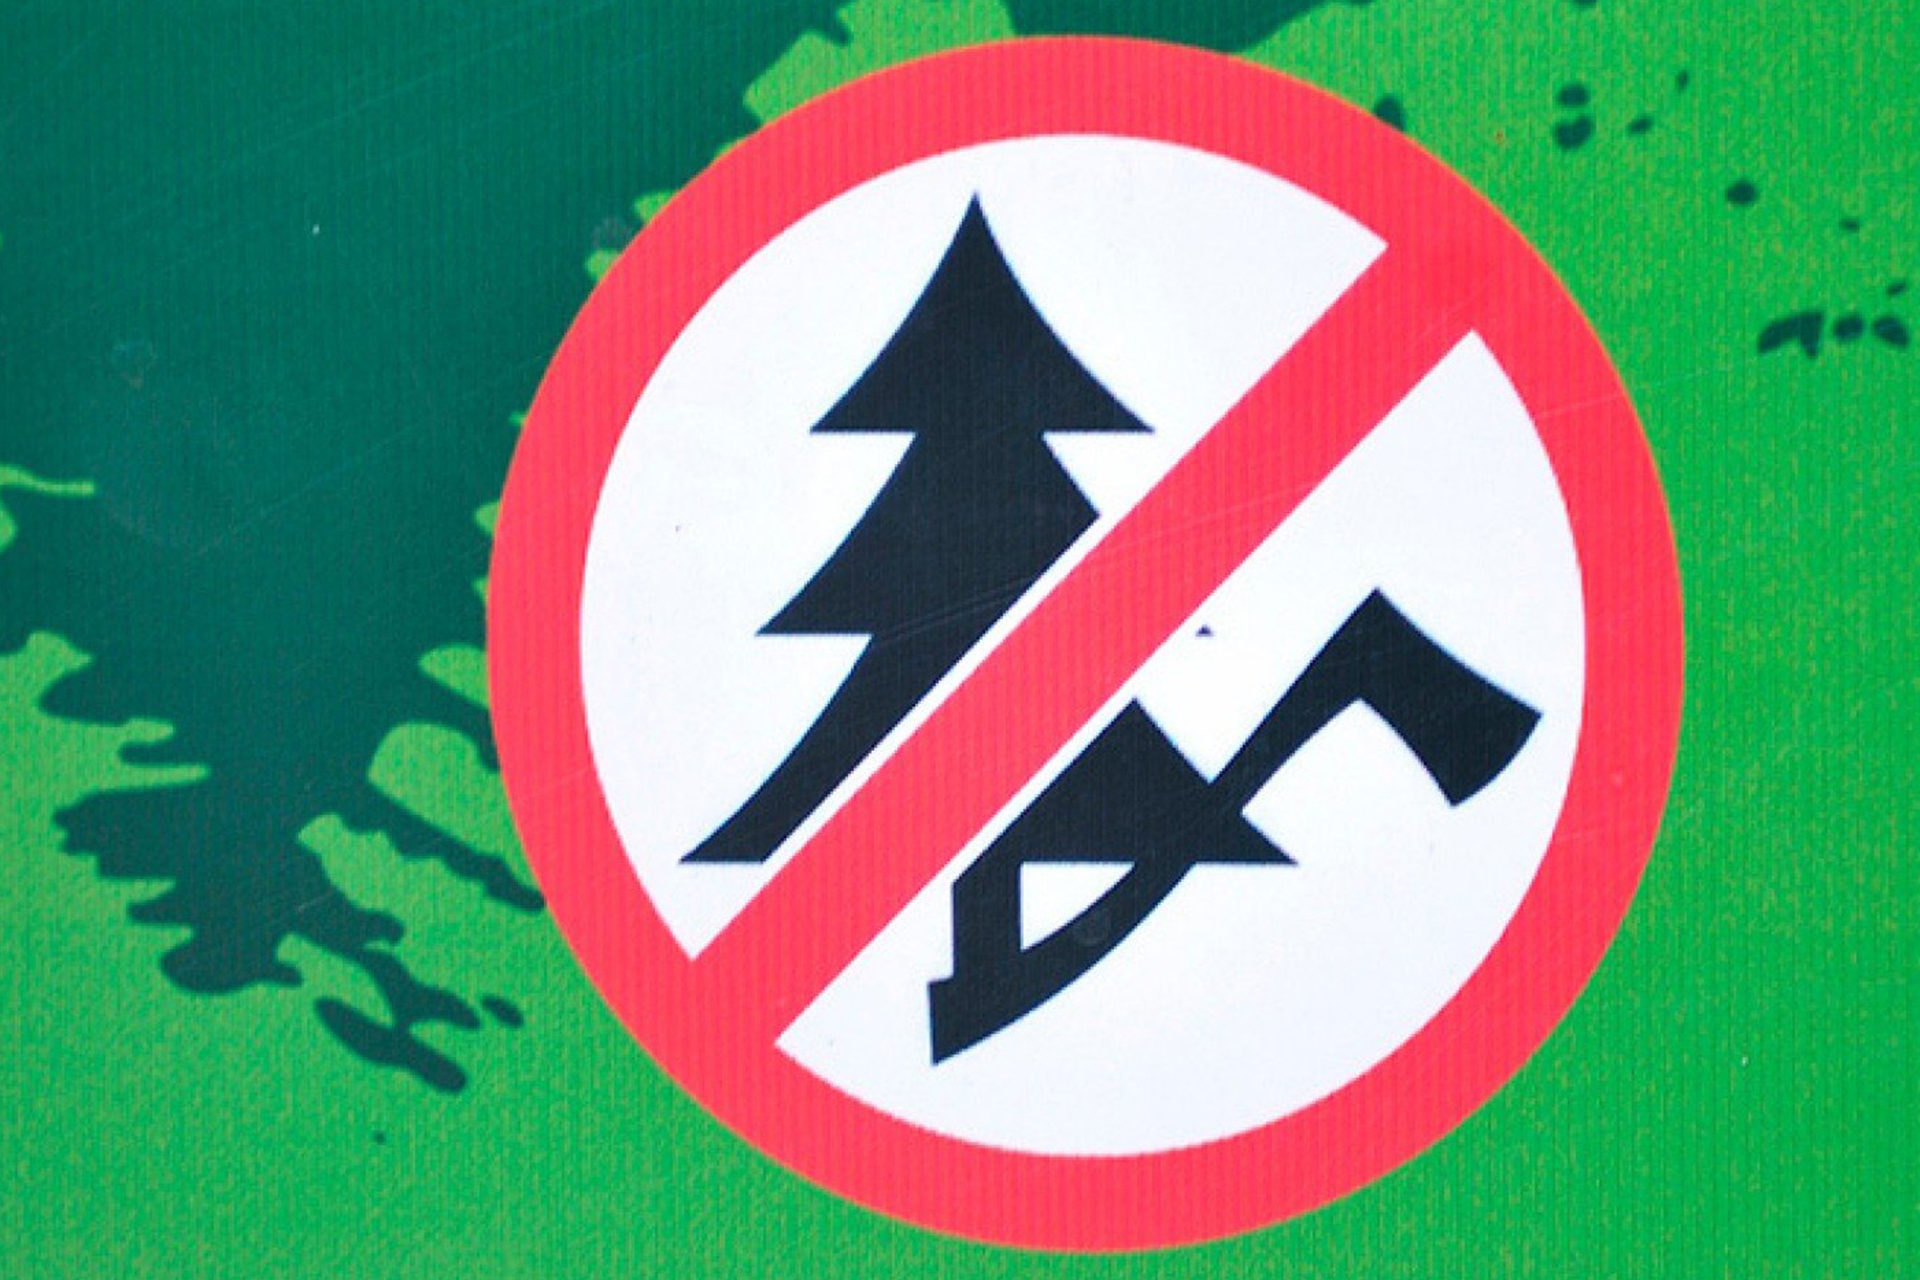 Нельзя рубить деревья. Против вырубки леса. Вырубка лепа запрнщена. Знак вырубка леса запрещена. Знак запрещающий вырубку деревьев.